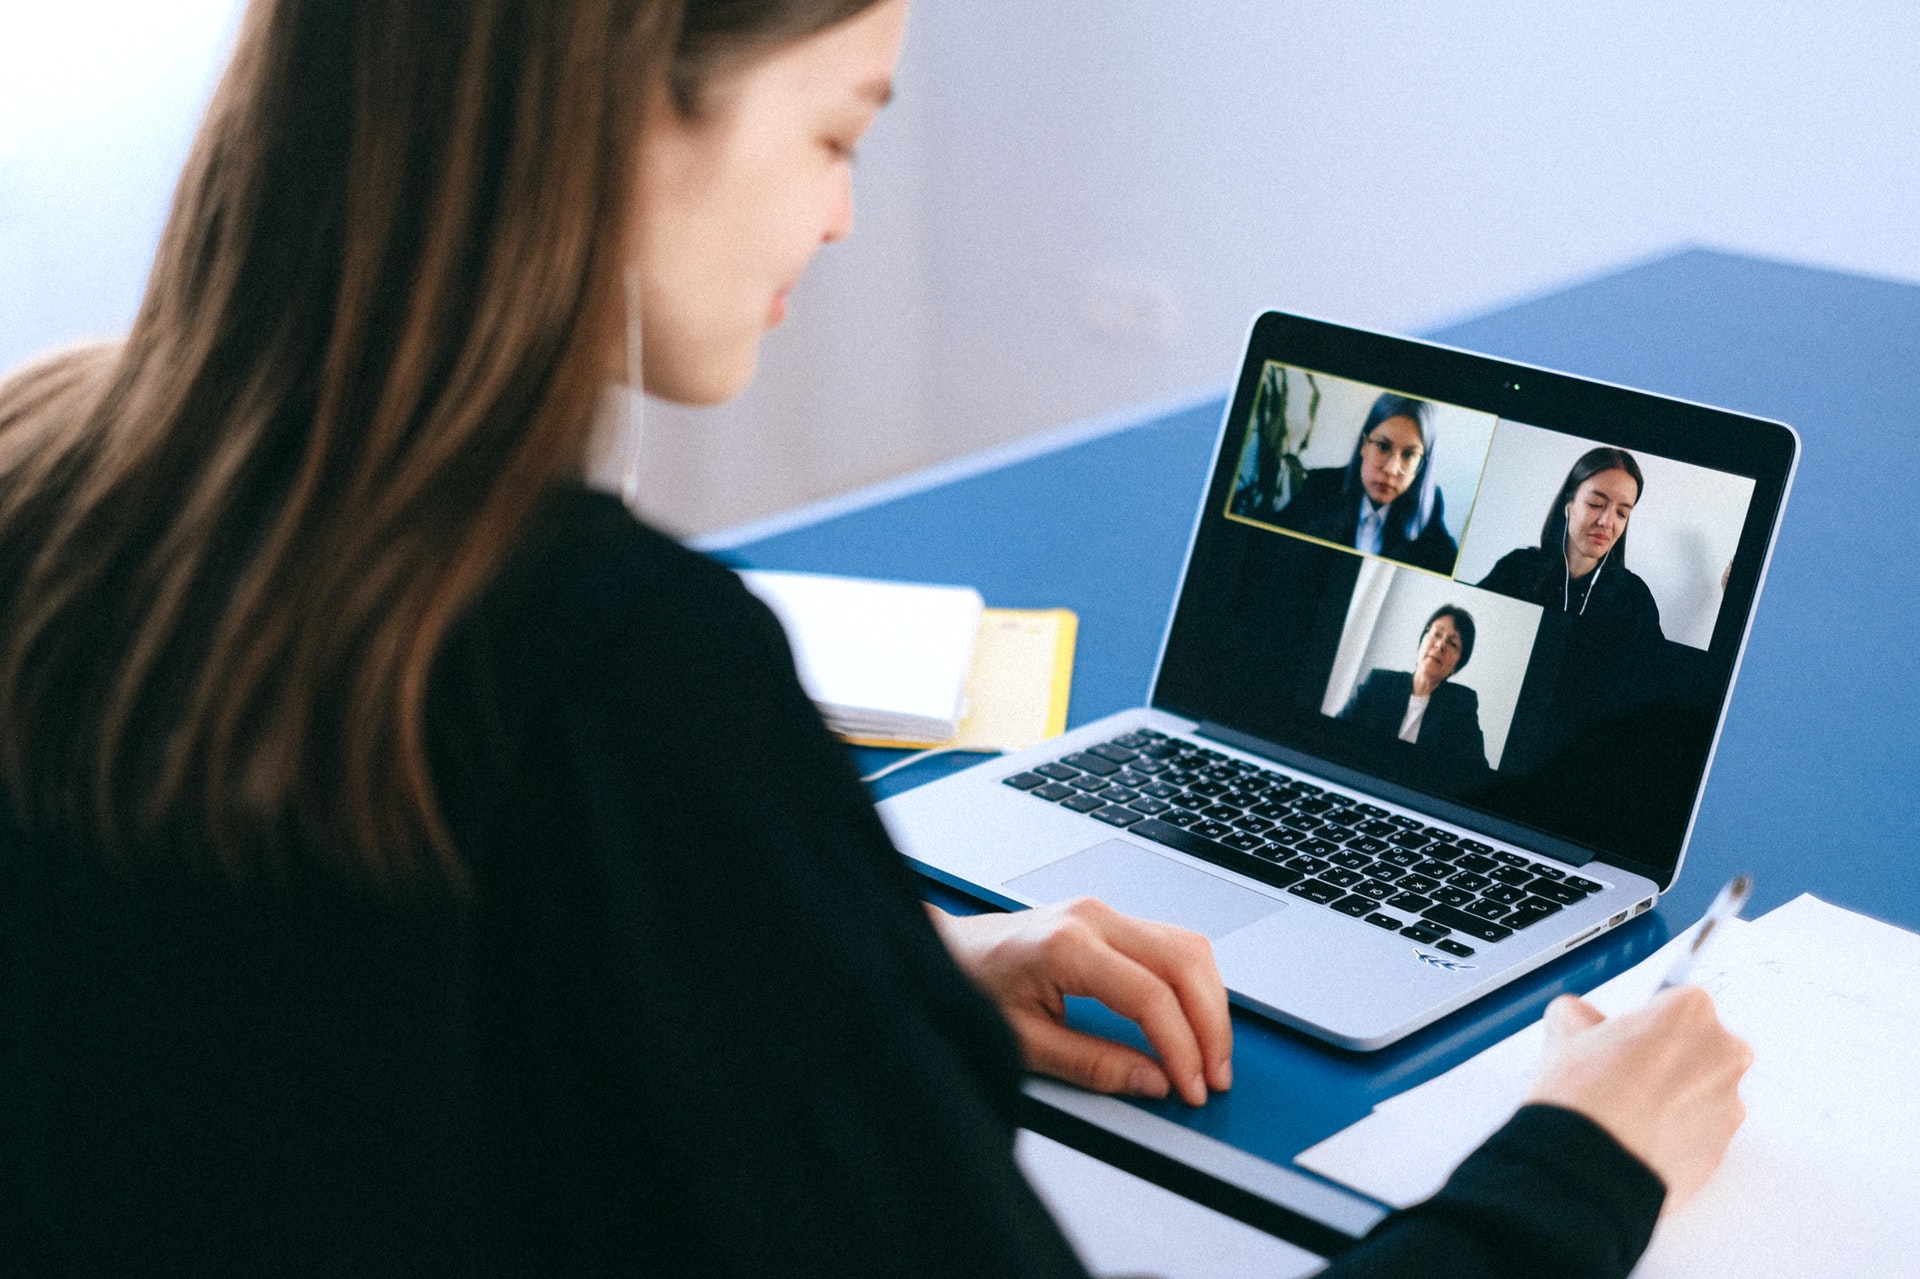 Imagem de uma mulher em frente um computador conversando com outras pessoas pela tela do computador. Imagem ilustrativa texto melhores negócios home office.